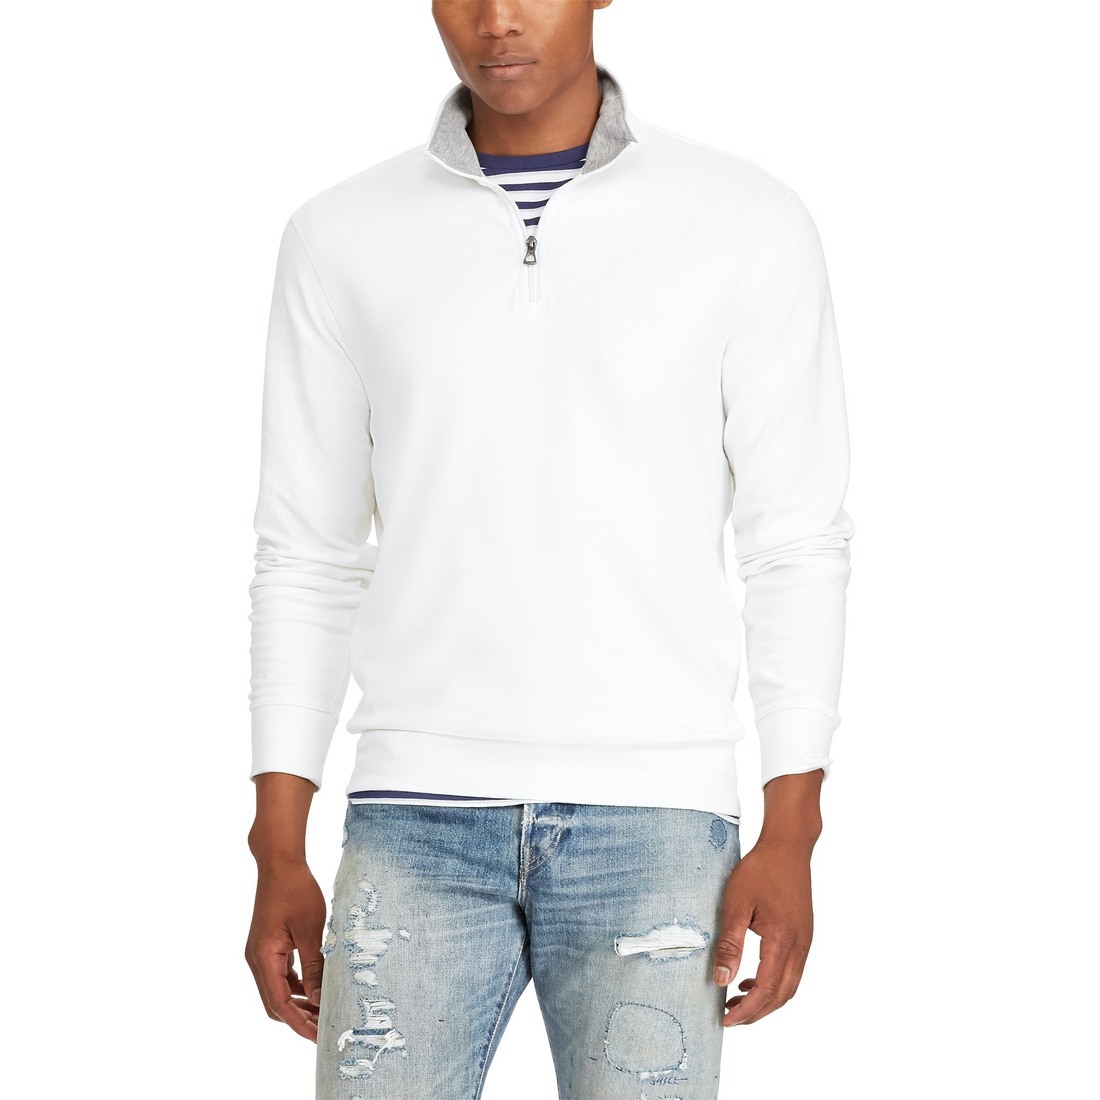 Men's Quarter-Zip Pullover